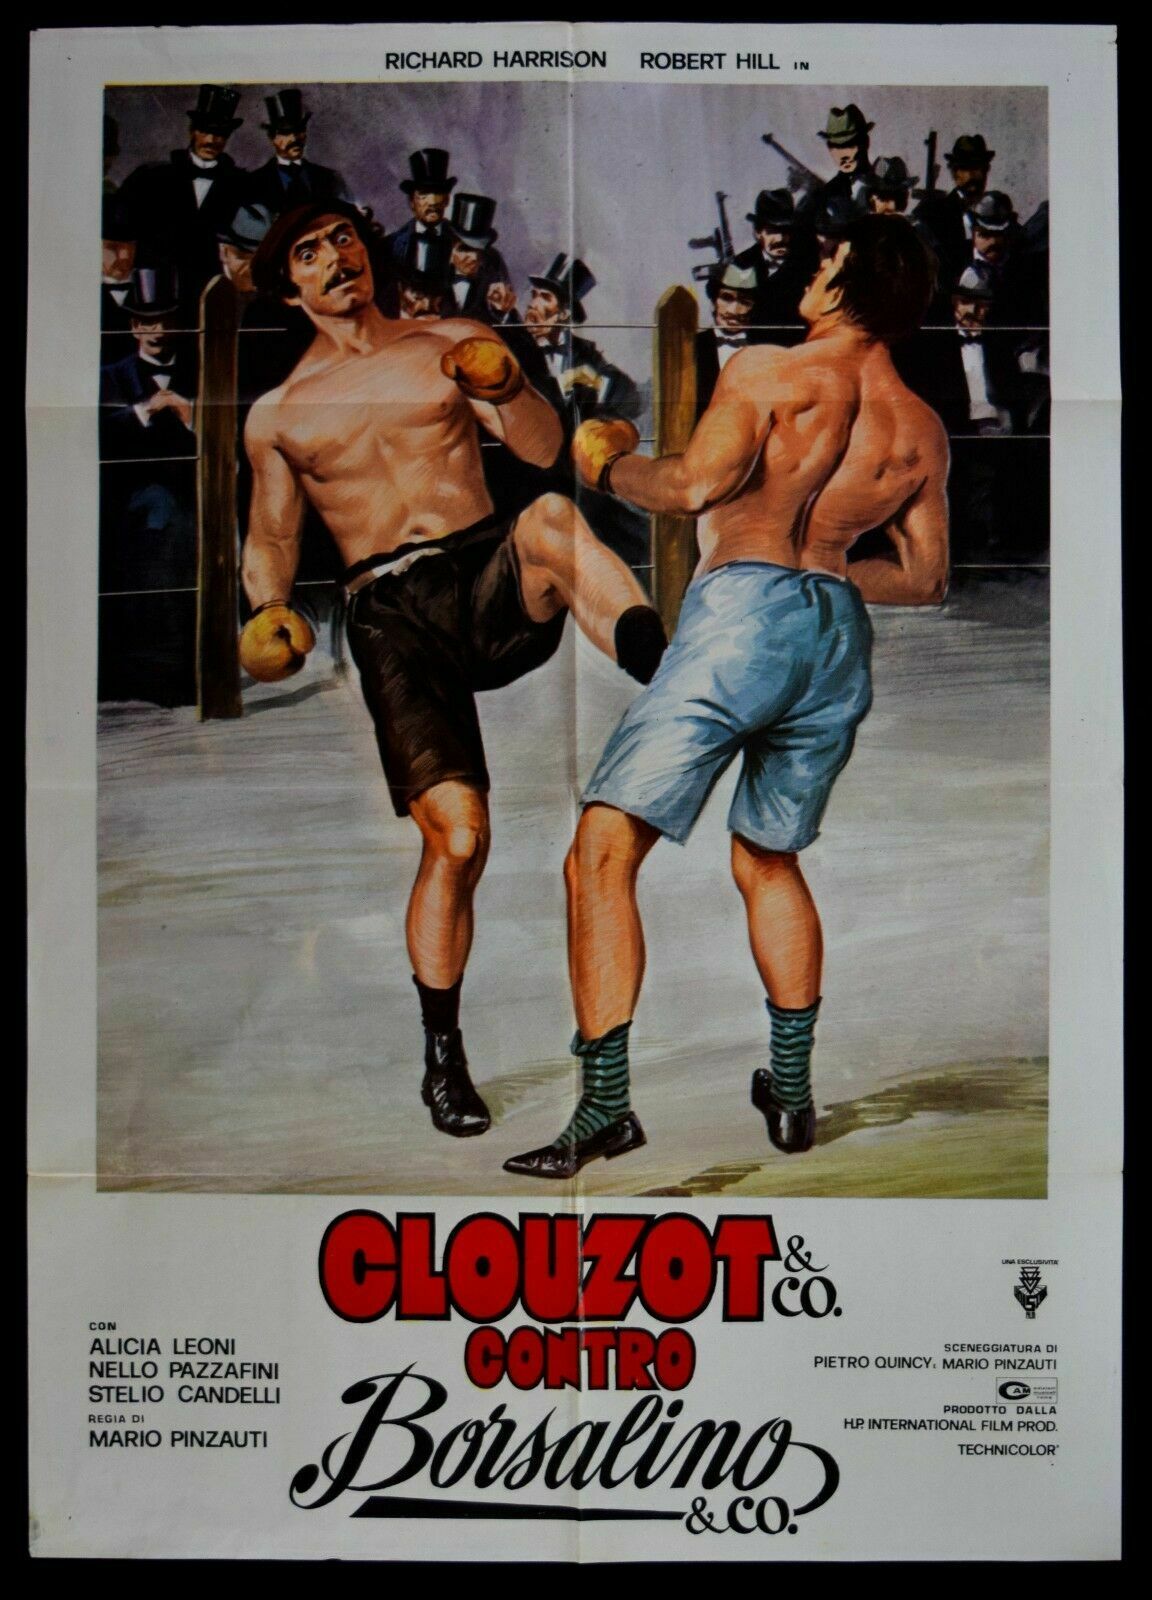 affiche du film Clouzot & C. contro Borsalino & C.